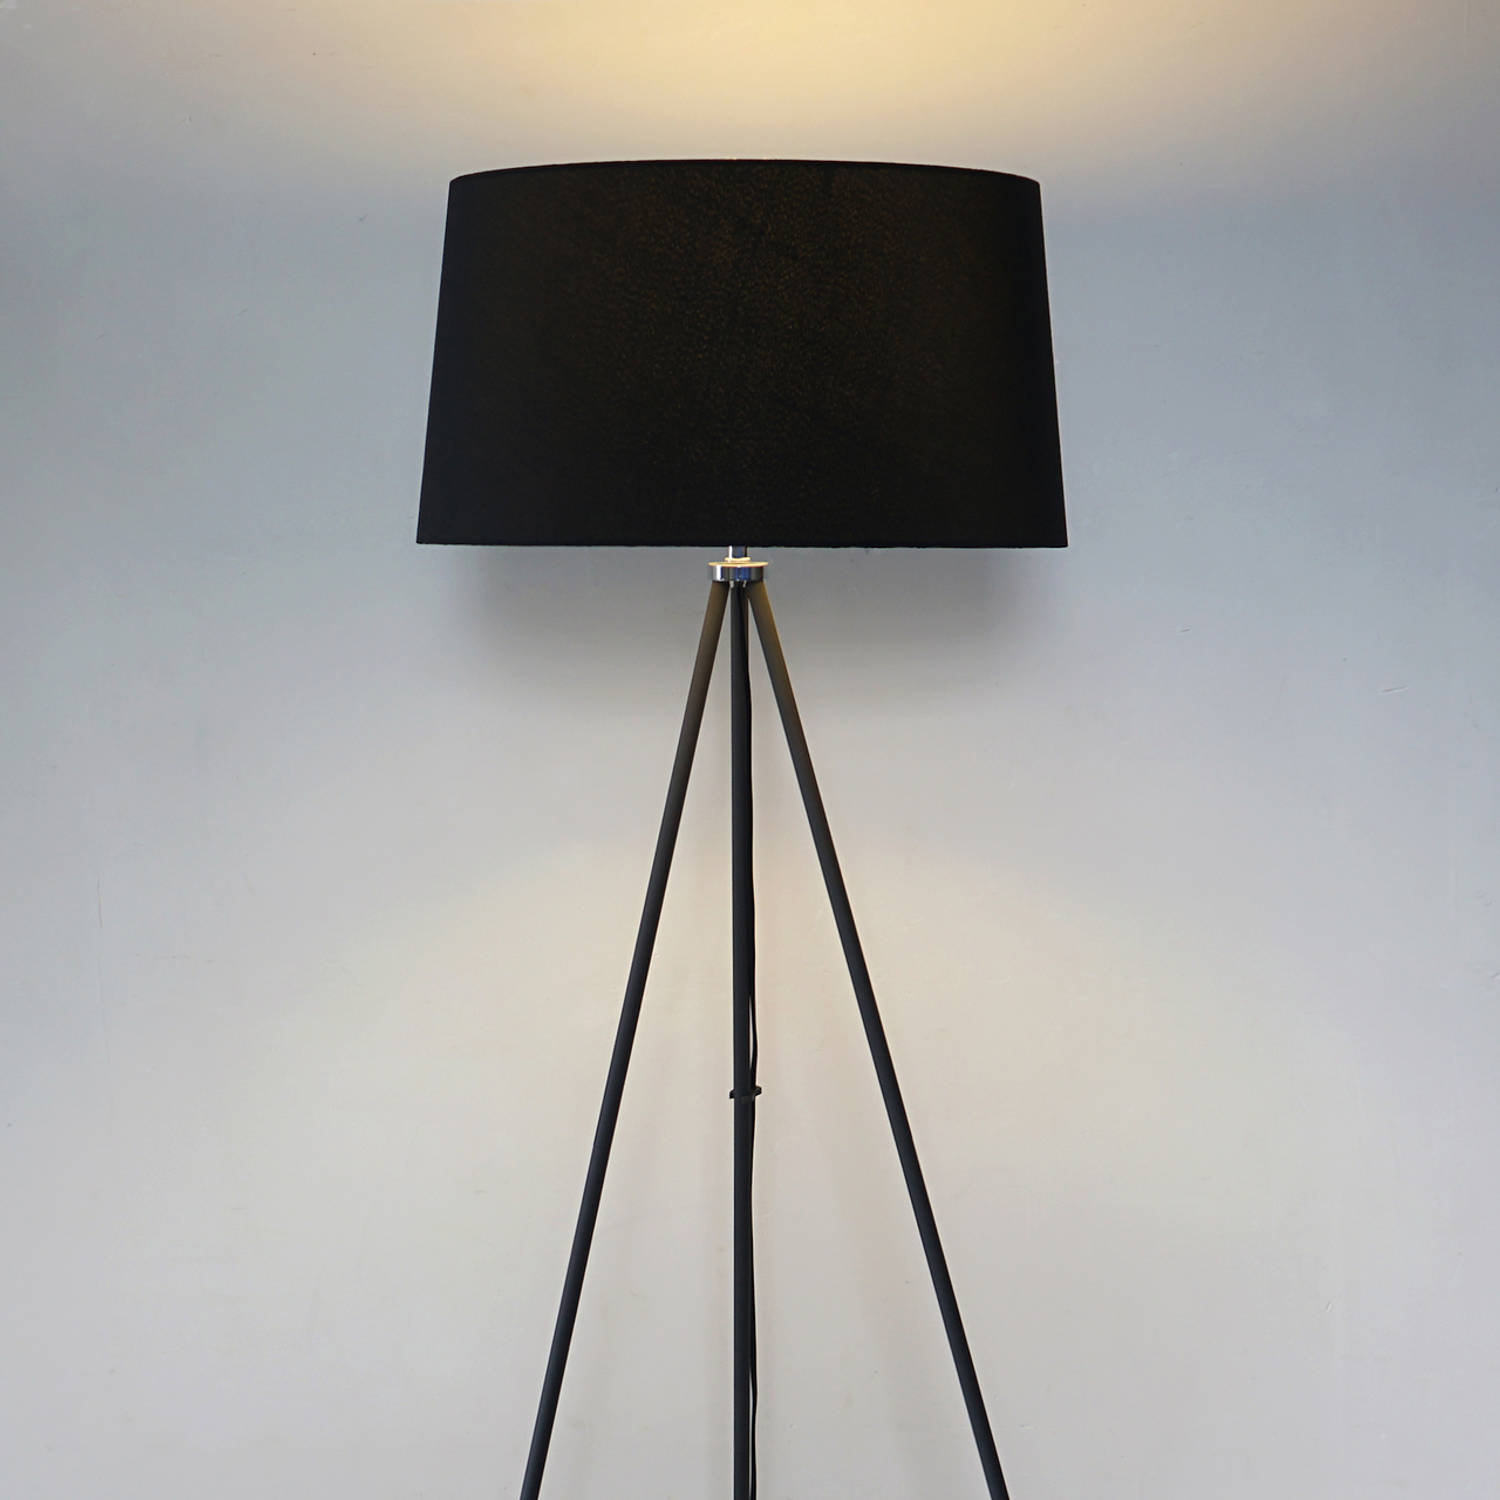 Gemoedsrust In tegenspraak Glad Staande vloerlamp op statief minimalistisch design - Staande lamp op  driepoot modern - Zwart - 40W - 48 x 156 cm | Blokker